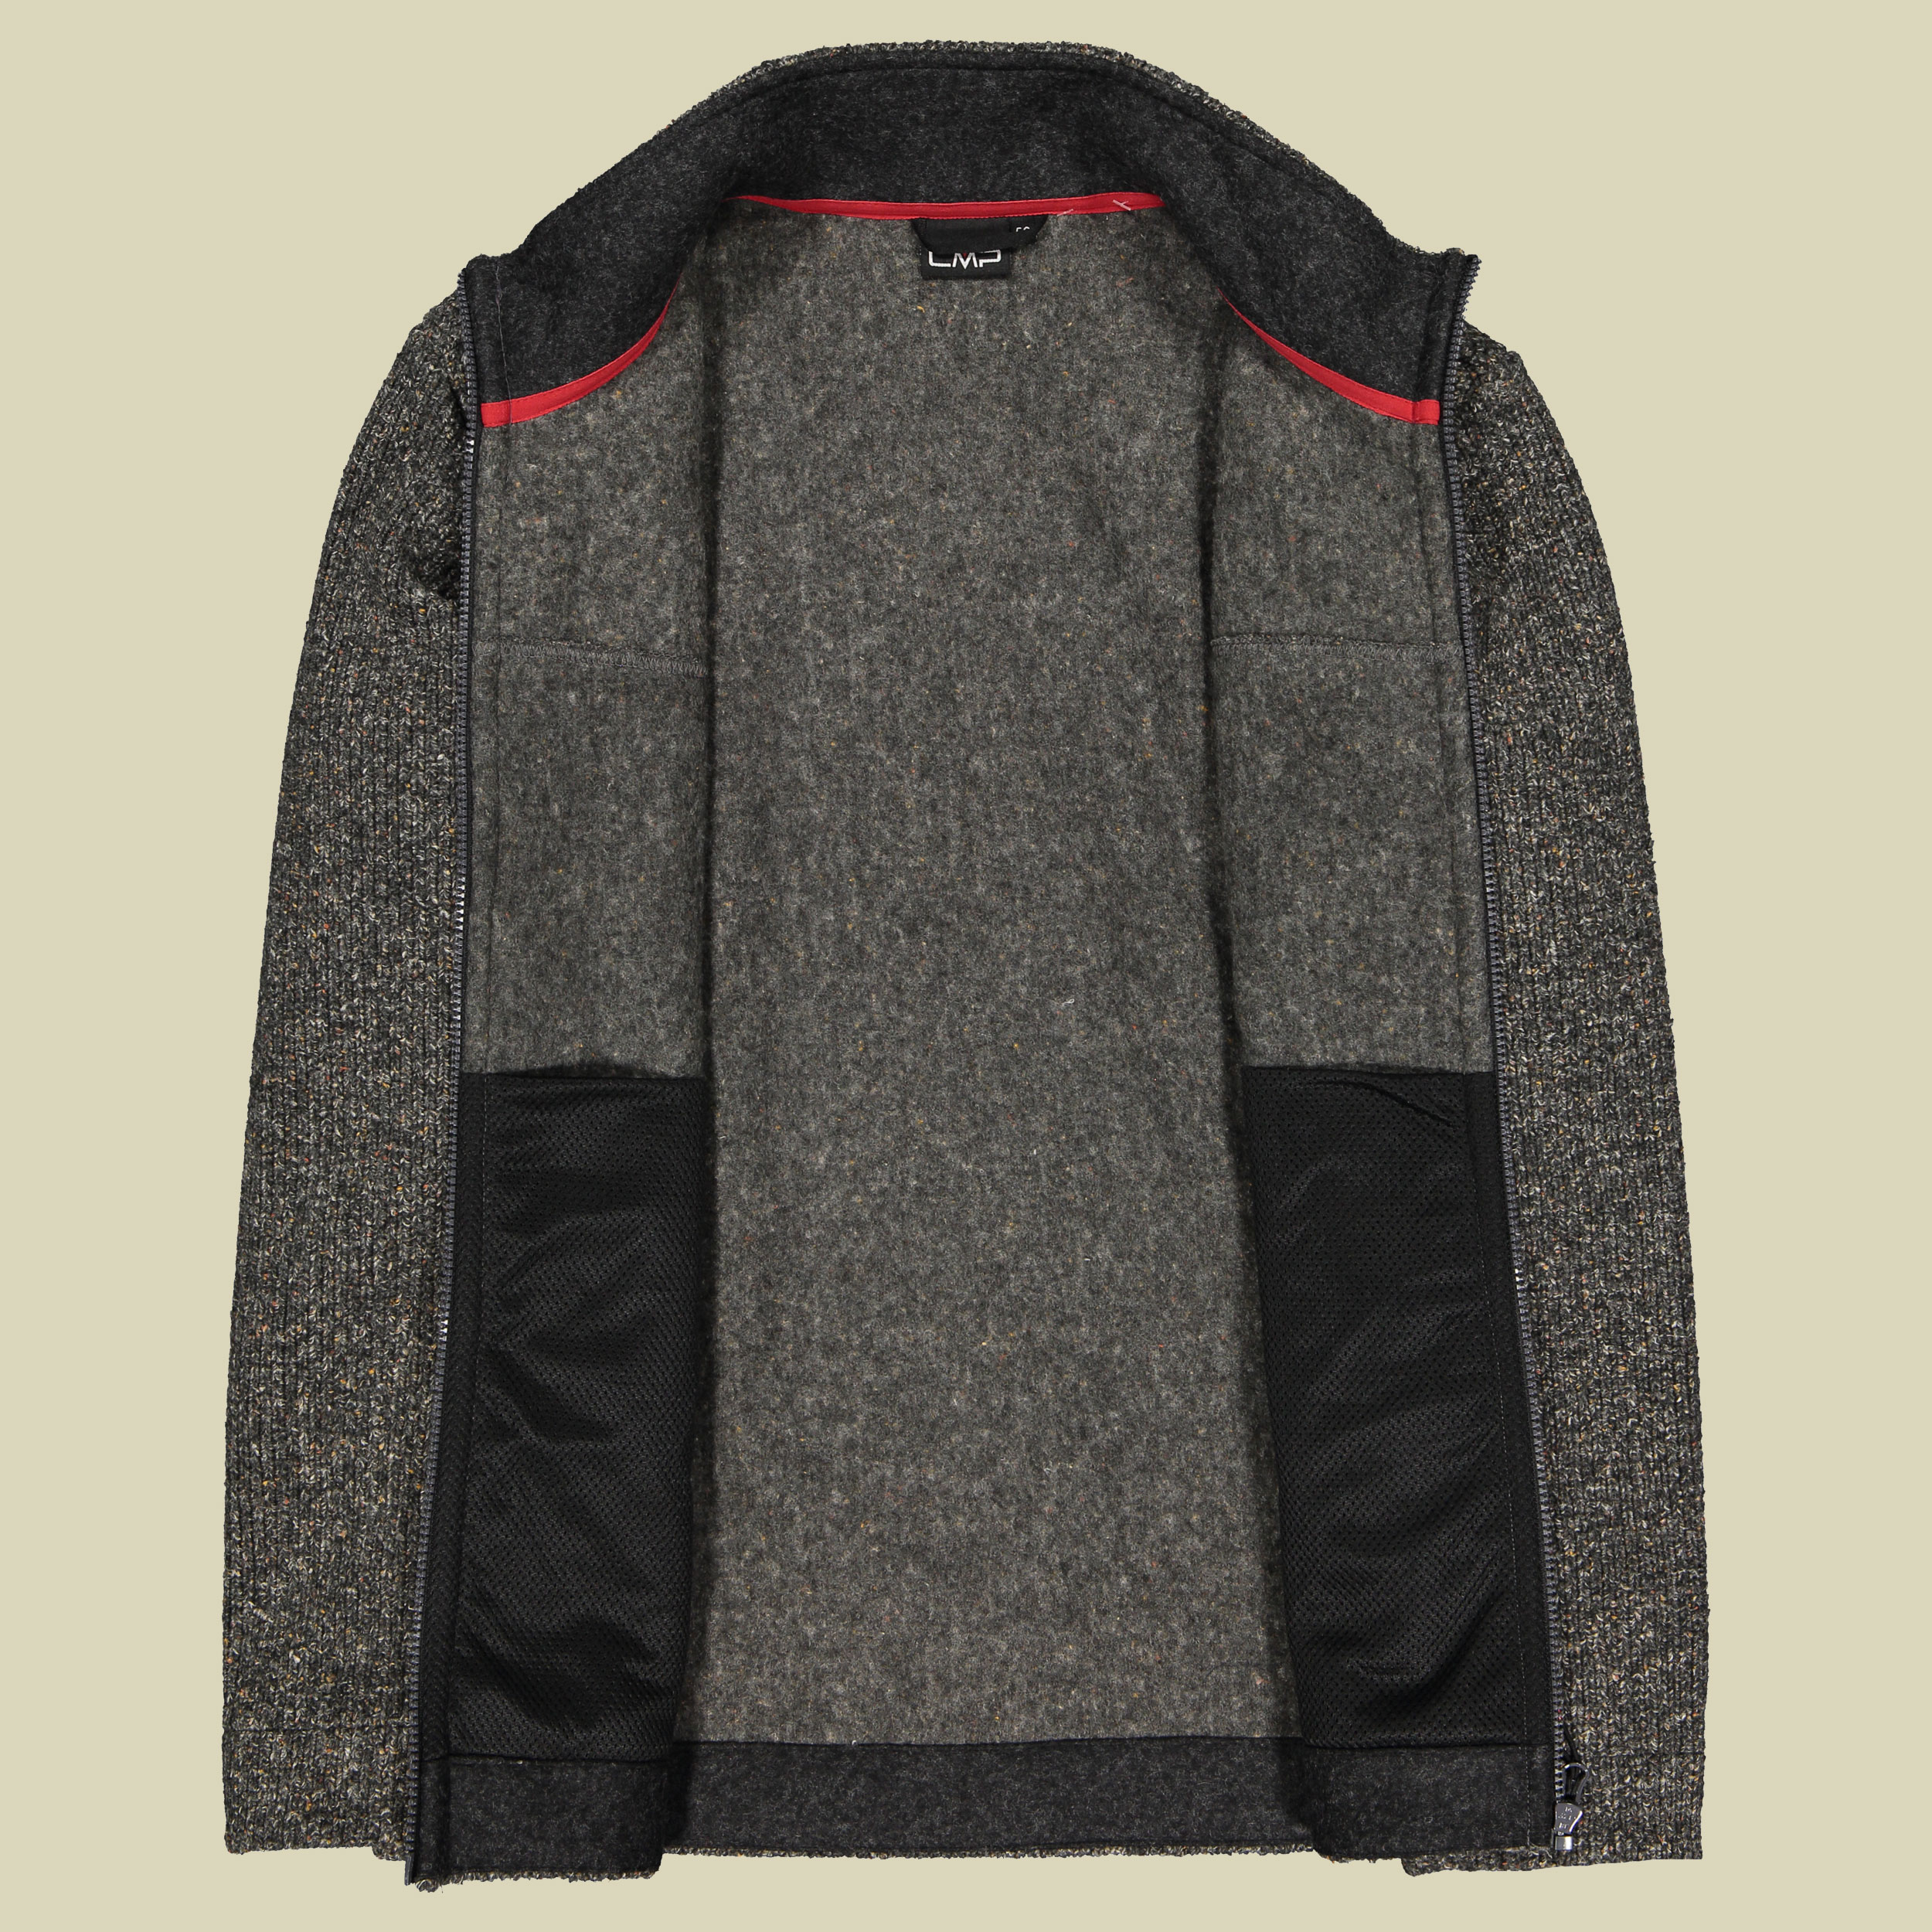 Man Jacket Wooltech 31M3257 Größe 58 Farbe carbone melange U905